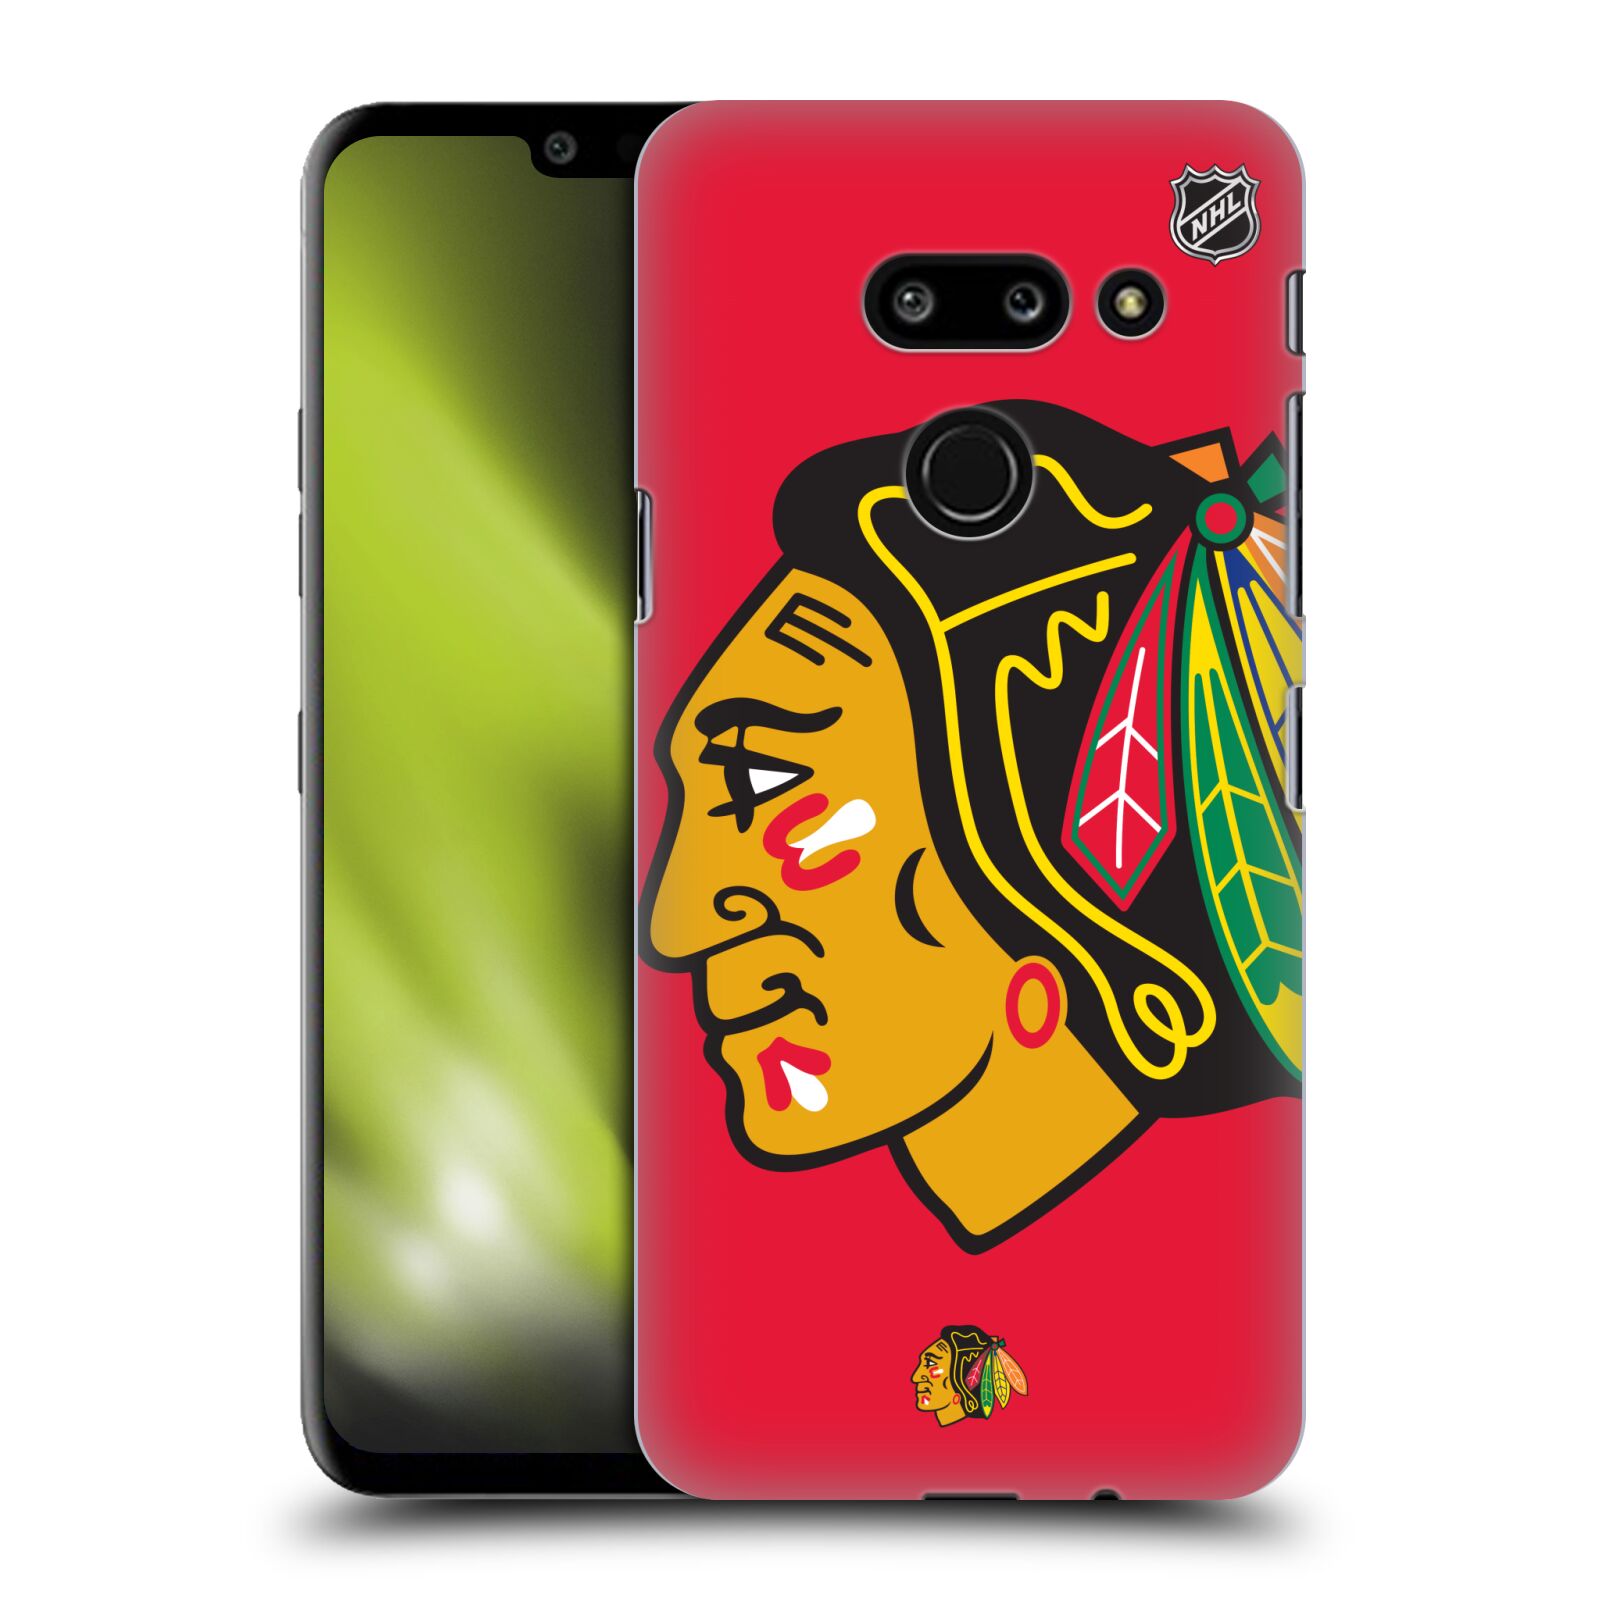 Pouzdro na mobil LG G8 ThinQ - HEAD CASE - Hokej NHL - Chicago Blackhawks - Velký znak